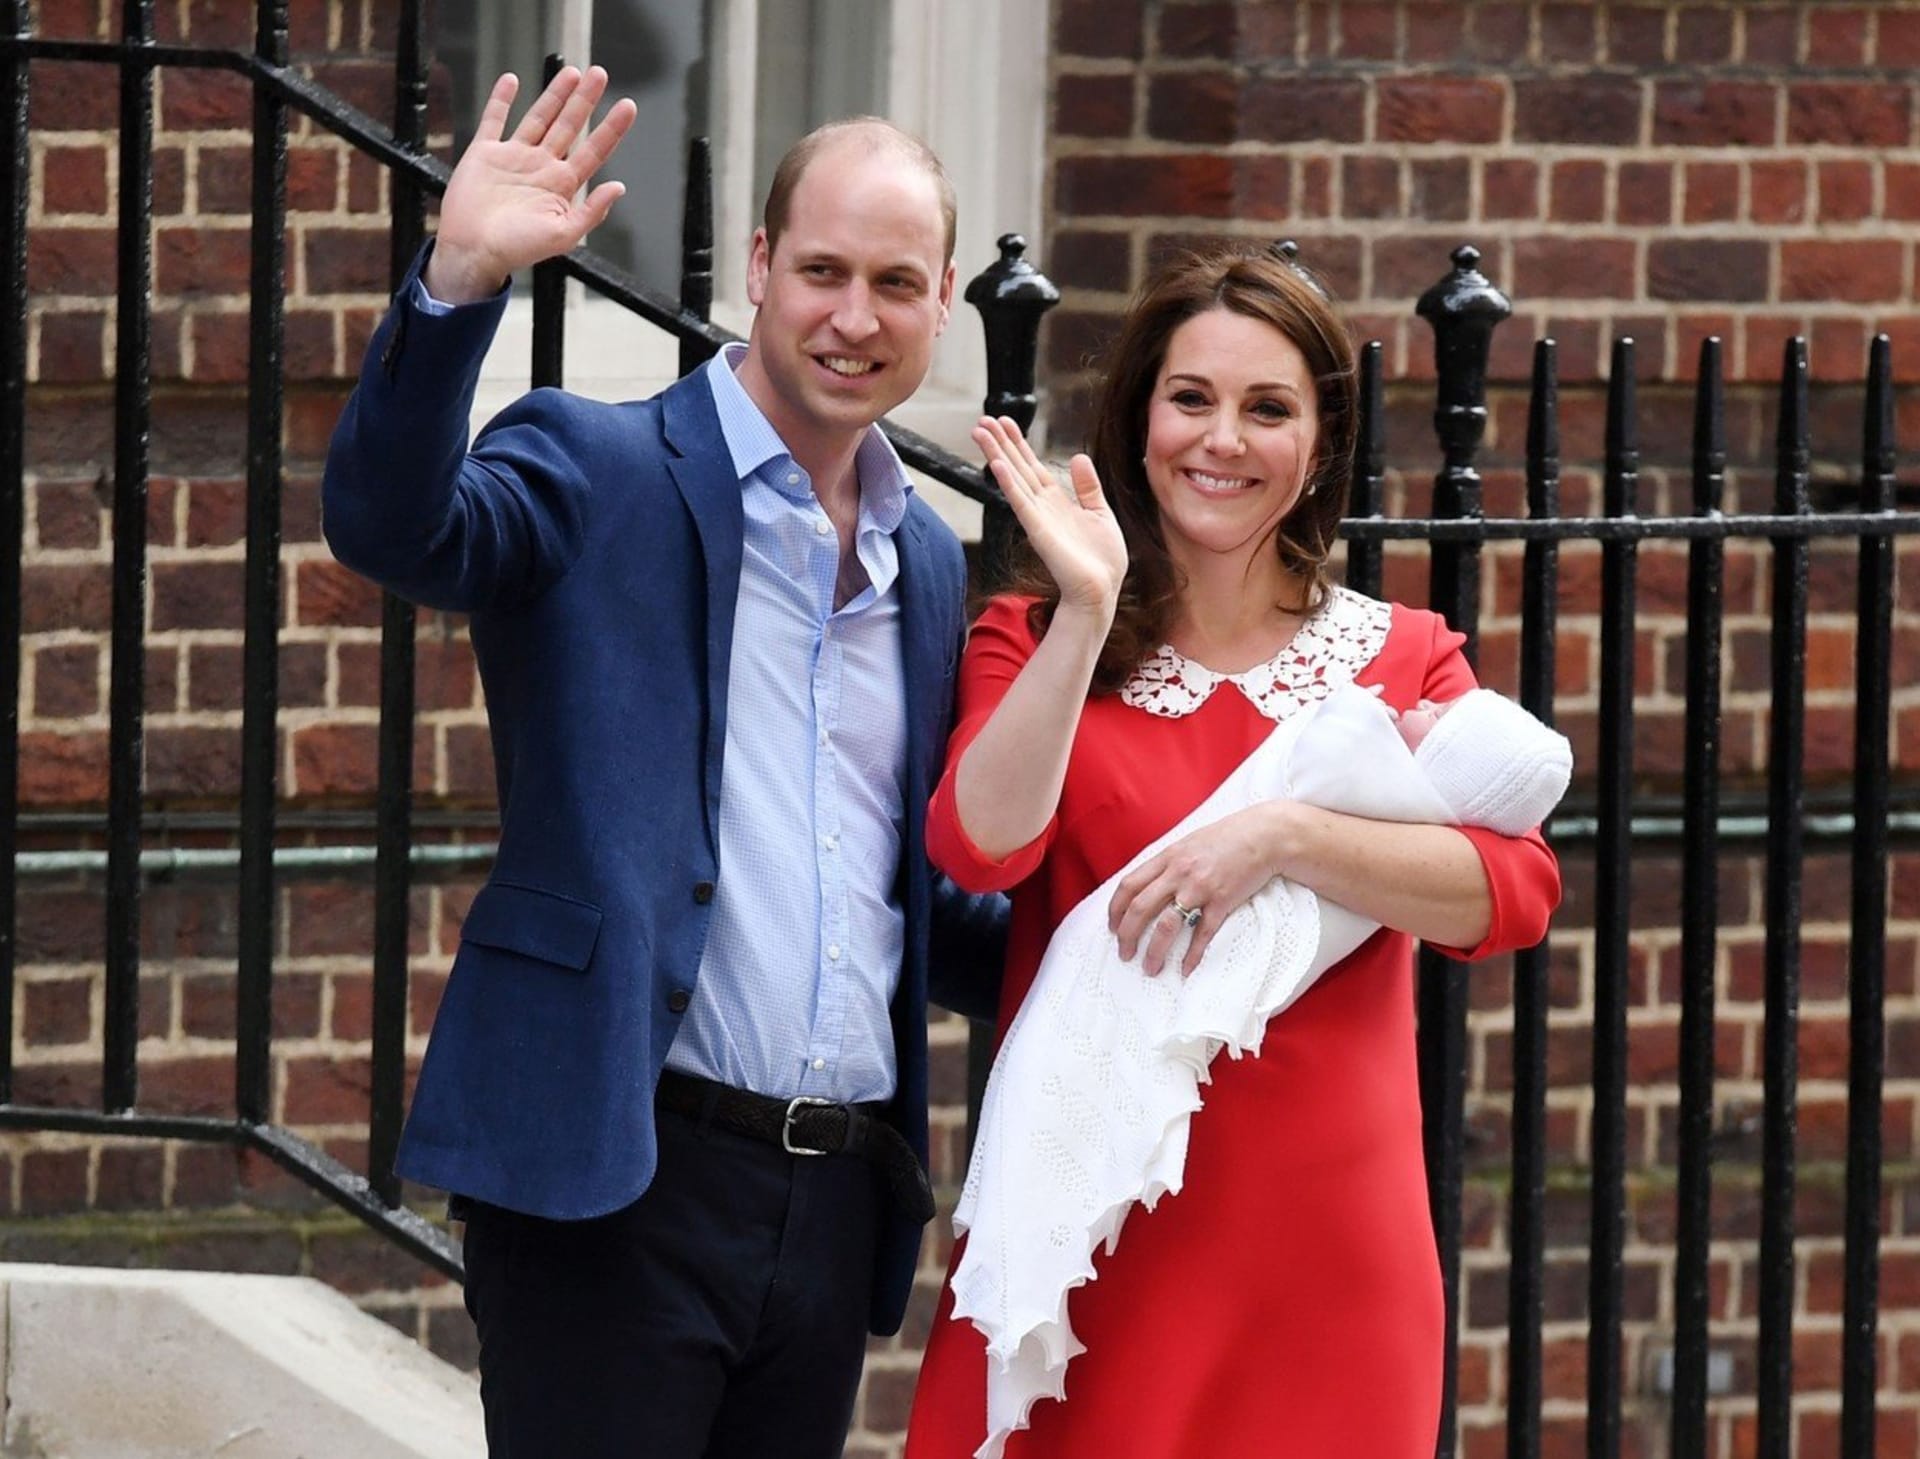 Prince William a jeho manželka Kate se stále těší velké popularitě.